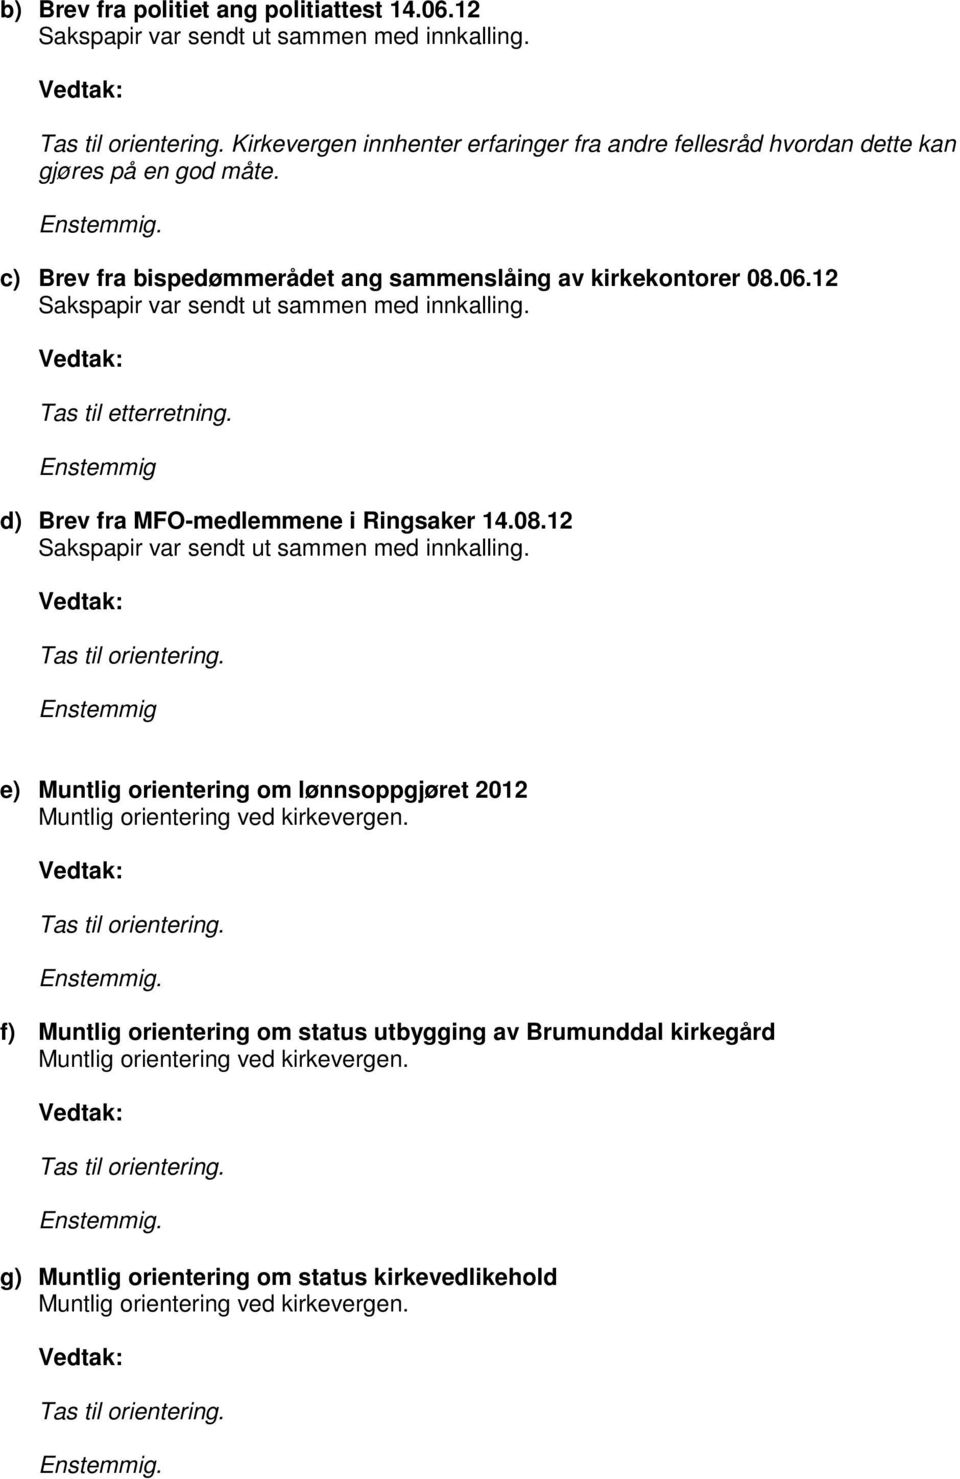 Enstemmig d) Brev fra MFO-medlemmene i Ringsaker 14.08.